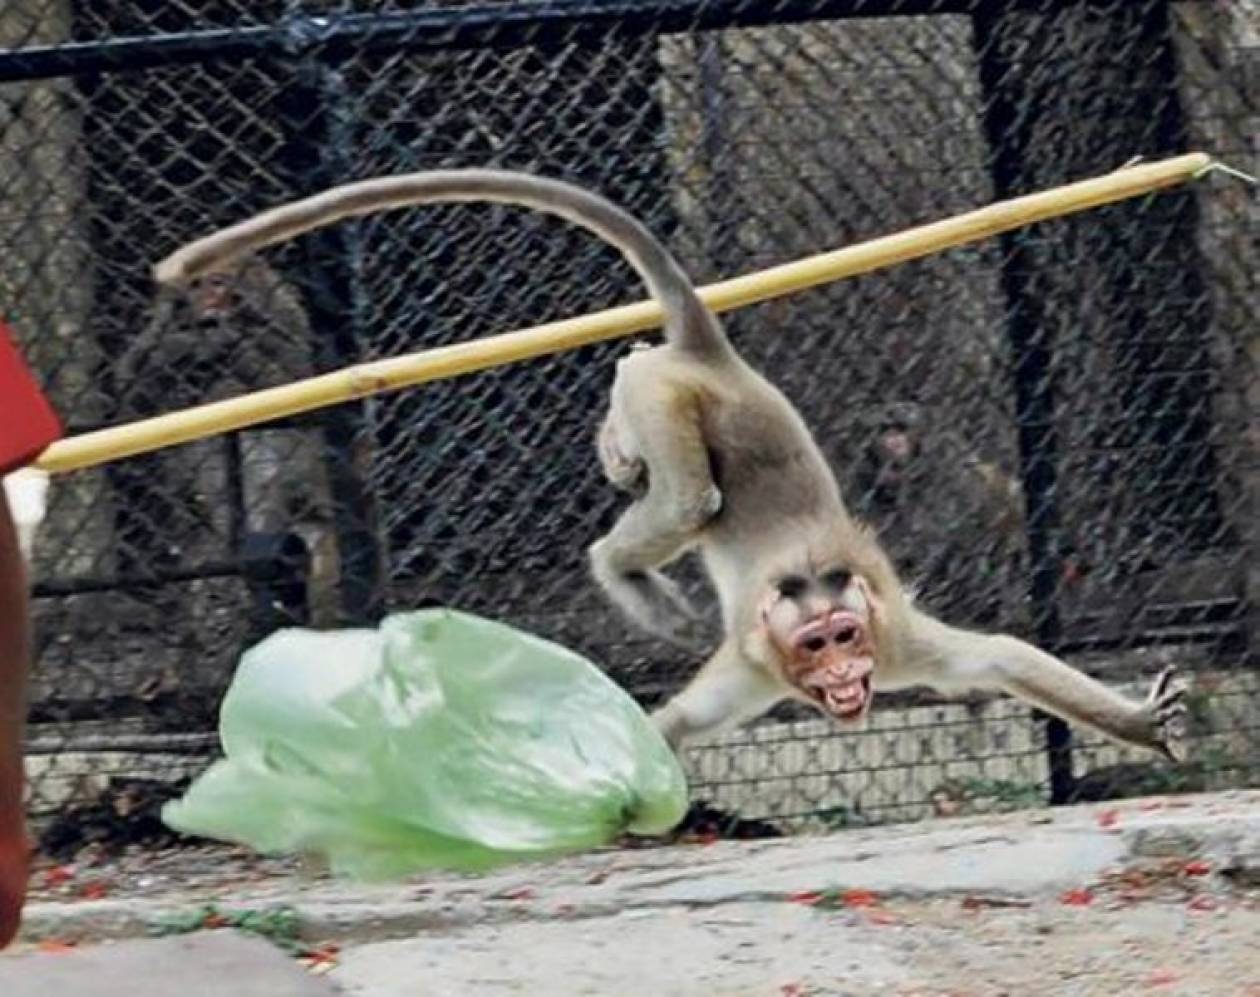 Οργισμένη μαϊμού επιτέθηκε σε αγοράκι (pics)